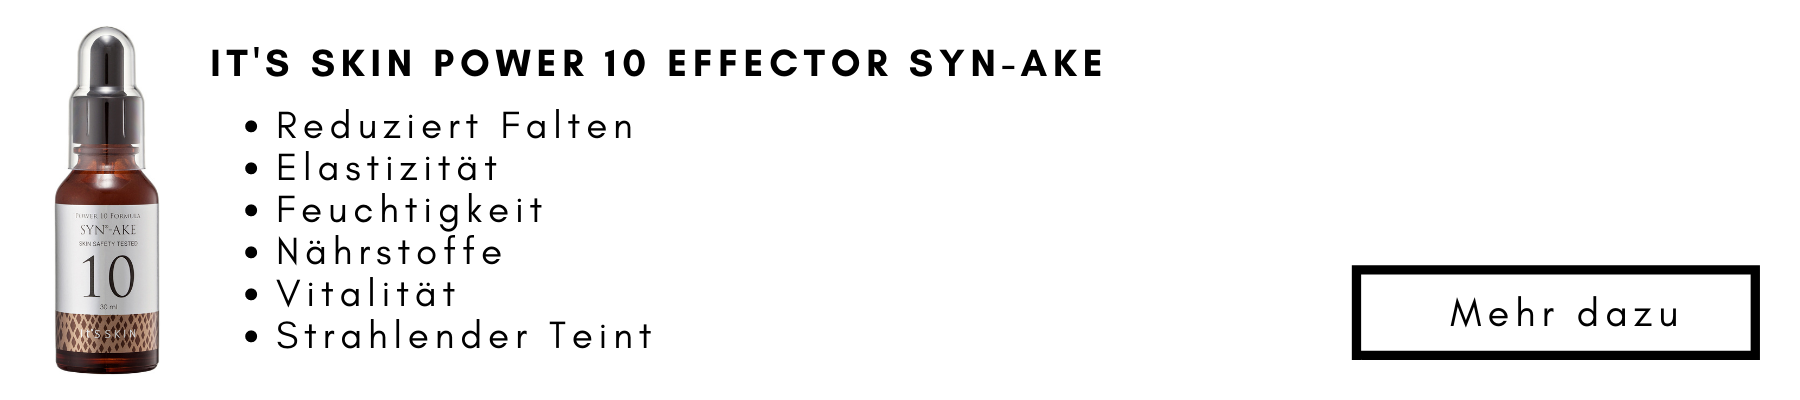 Syn-ake-Effector-Bild